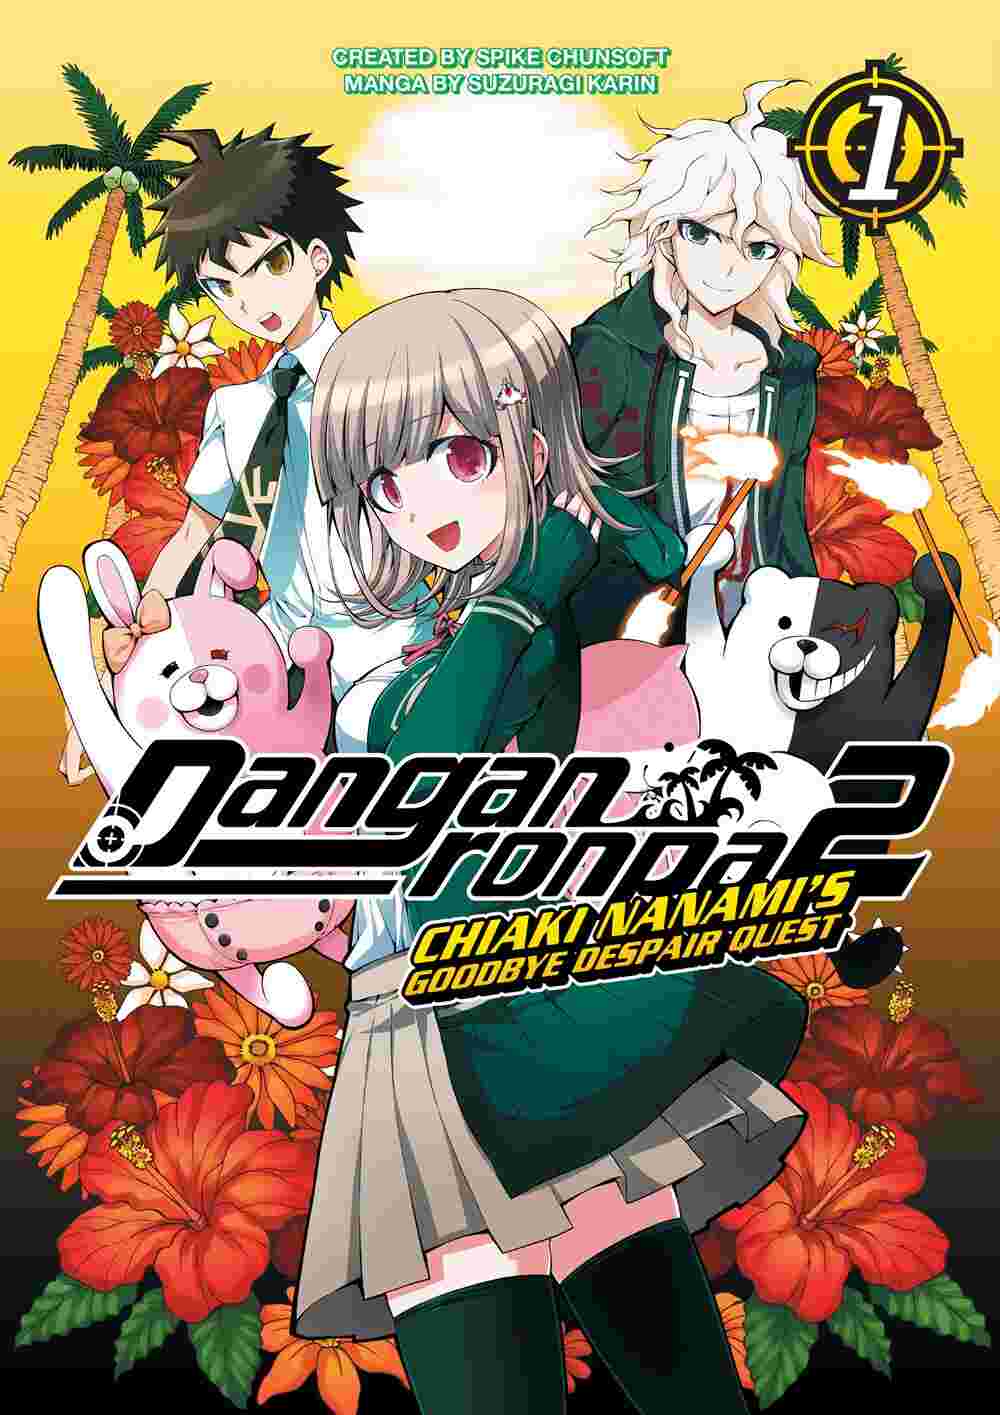 Danganronpa 2: Chiaki Nanami's Goodbye Despair Quest Vol. 01